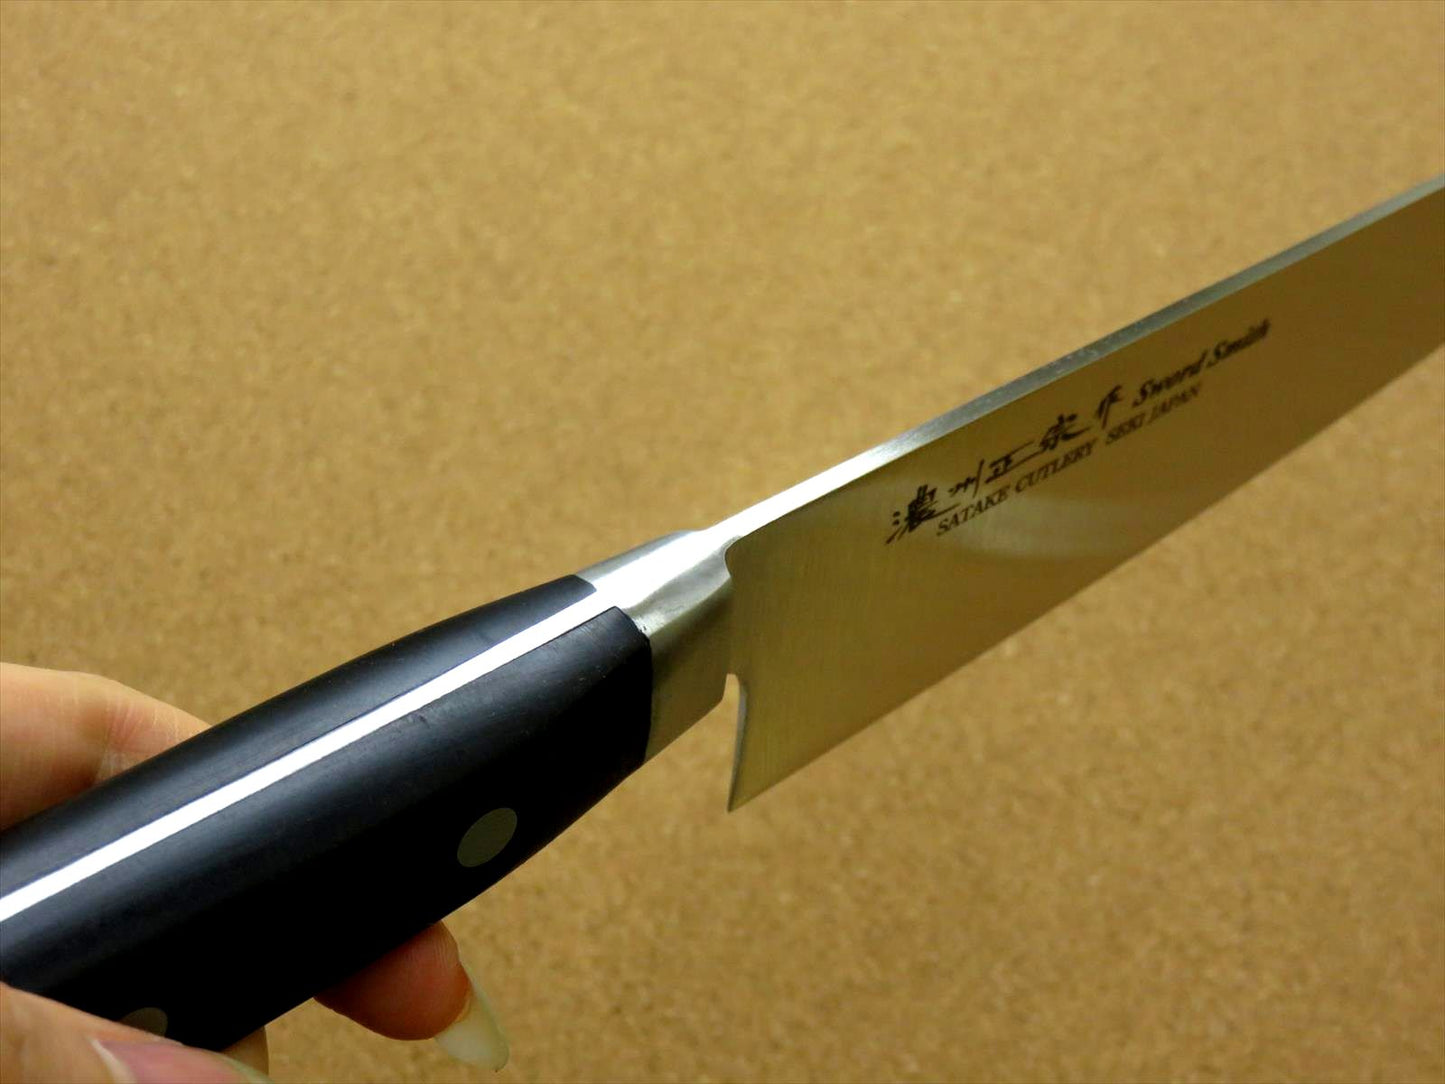 Japanese Masamune Kitchen Chef's Knife 210mm 8 inch ABS resin Bolster SEKI JAPAN